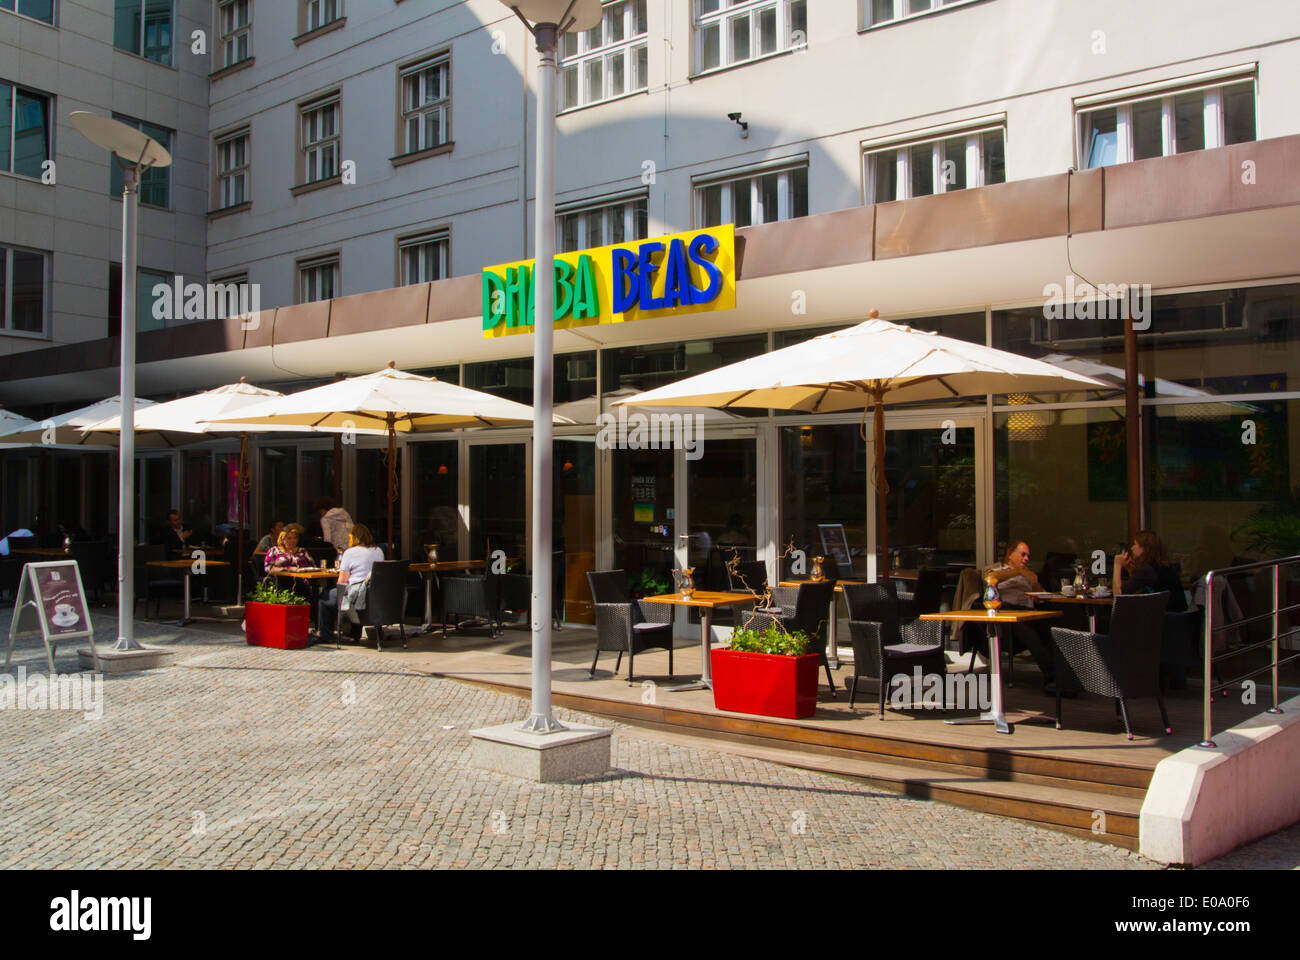 Le style indien Beas Dhaba Restaurant végétarien en libre service, new town, Prague, République Tchèque, Europe Banque D'Images